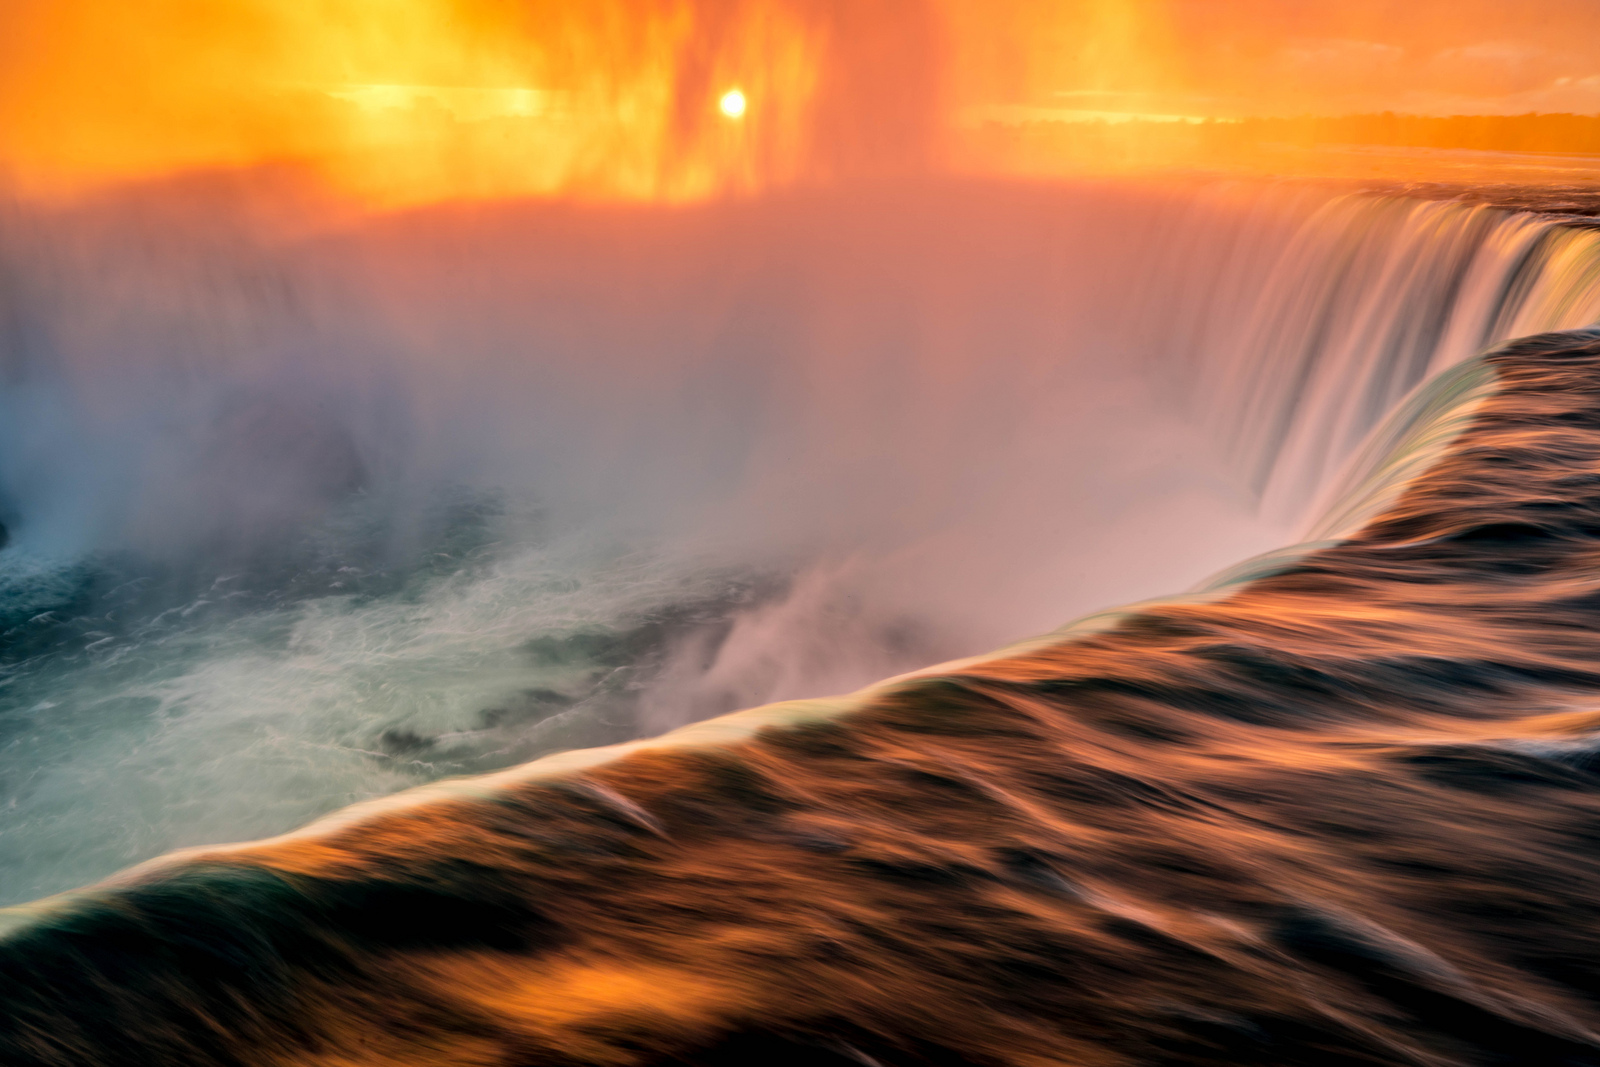 Niagara Falls at Sunrise